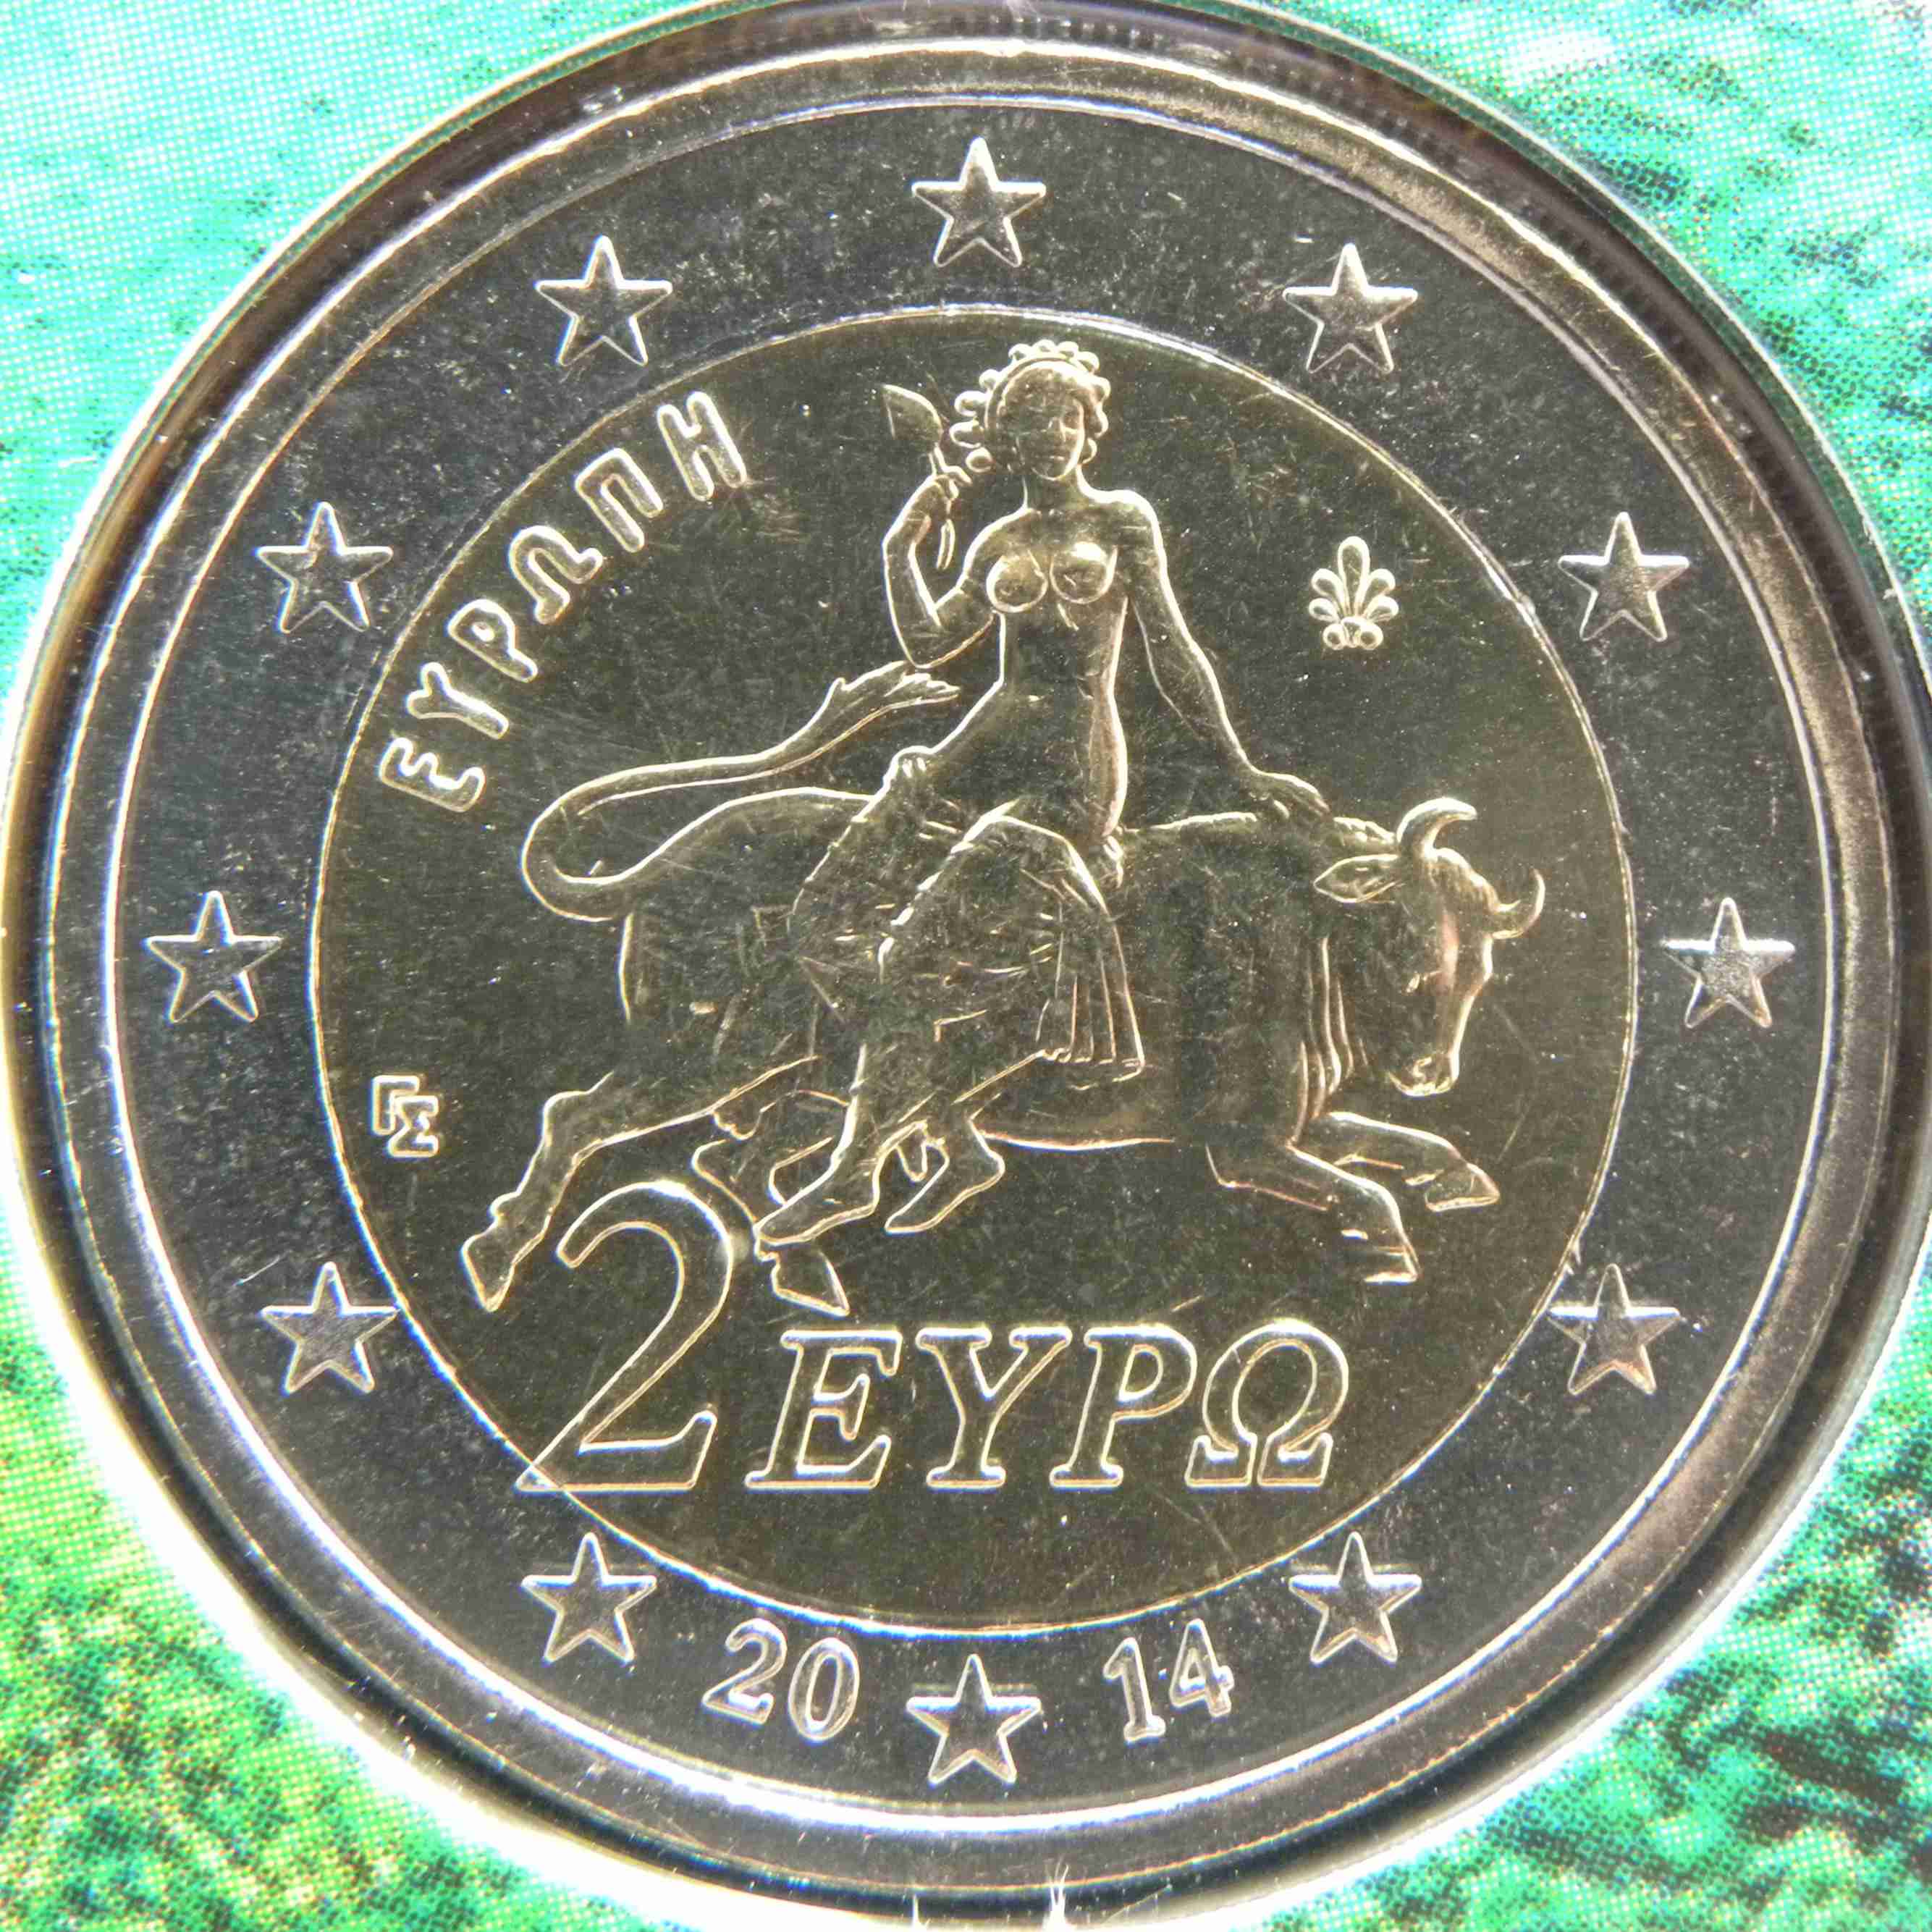 Griechenland 2 Euro Münze 2014 - euro-muenzen.tv - Der Online